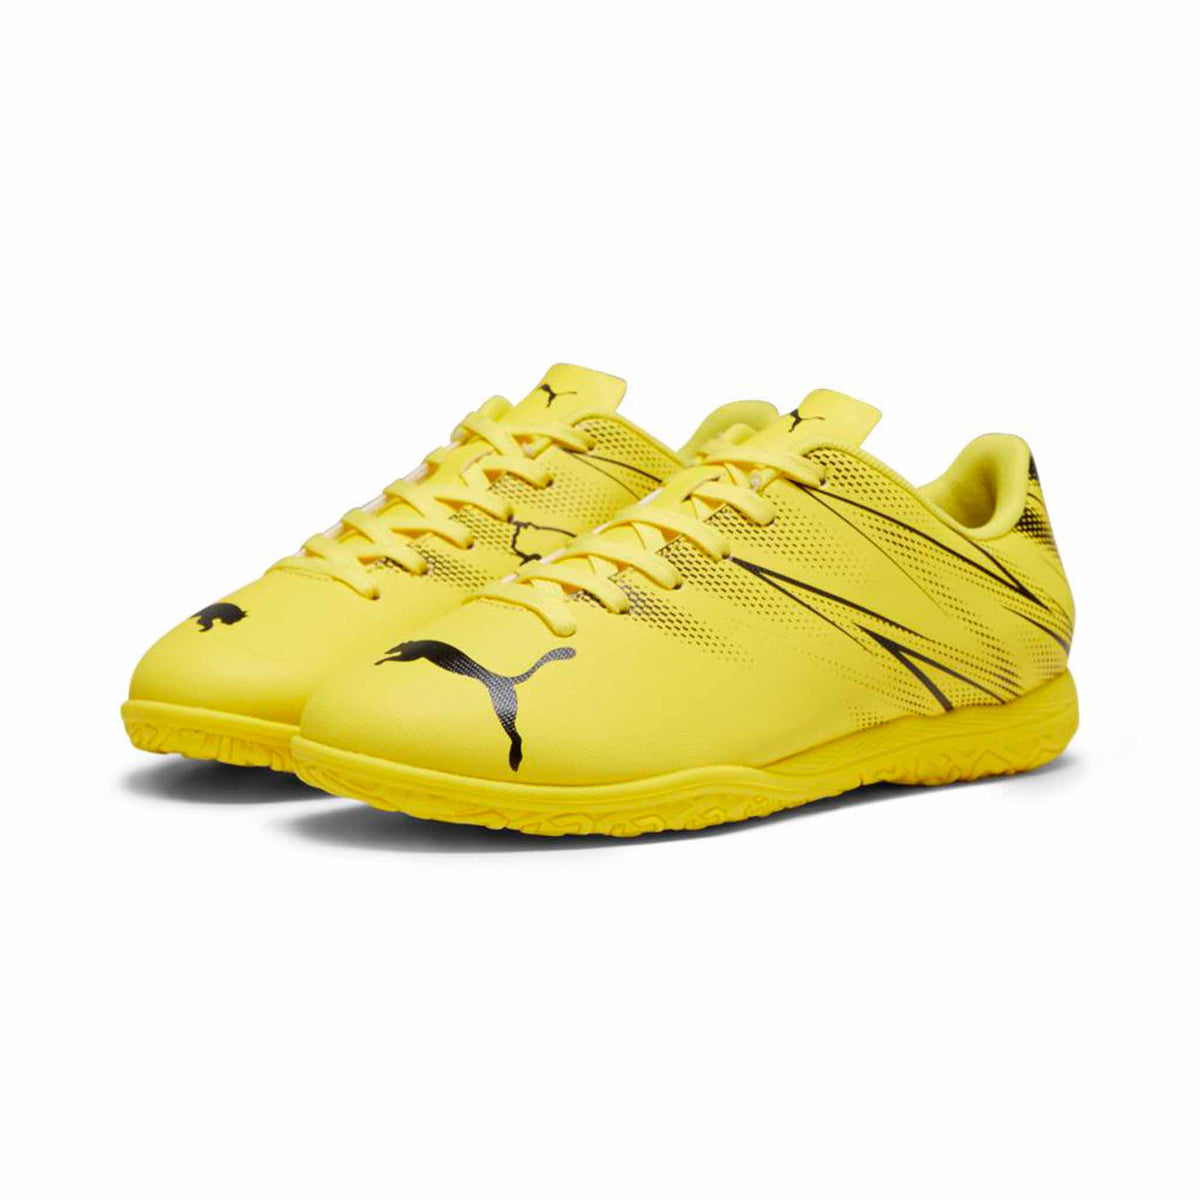 Puma Attacanto IT junior chaussure de soccer intérieur enfant - Yellow Blaze / Puma Black